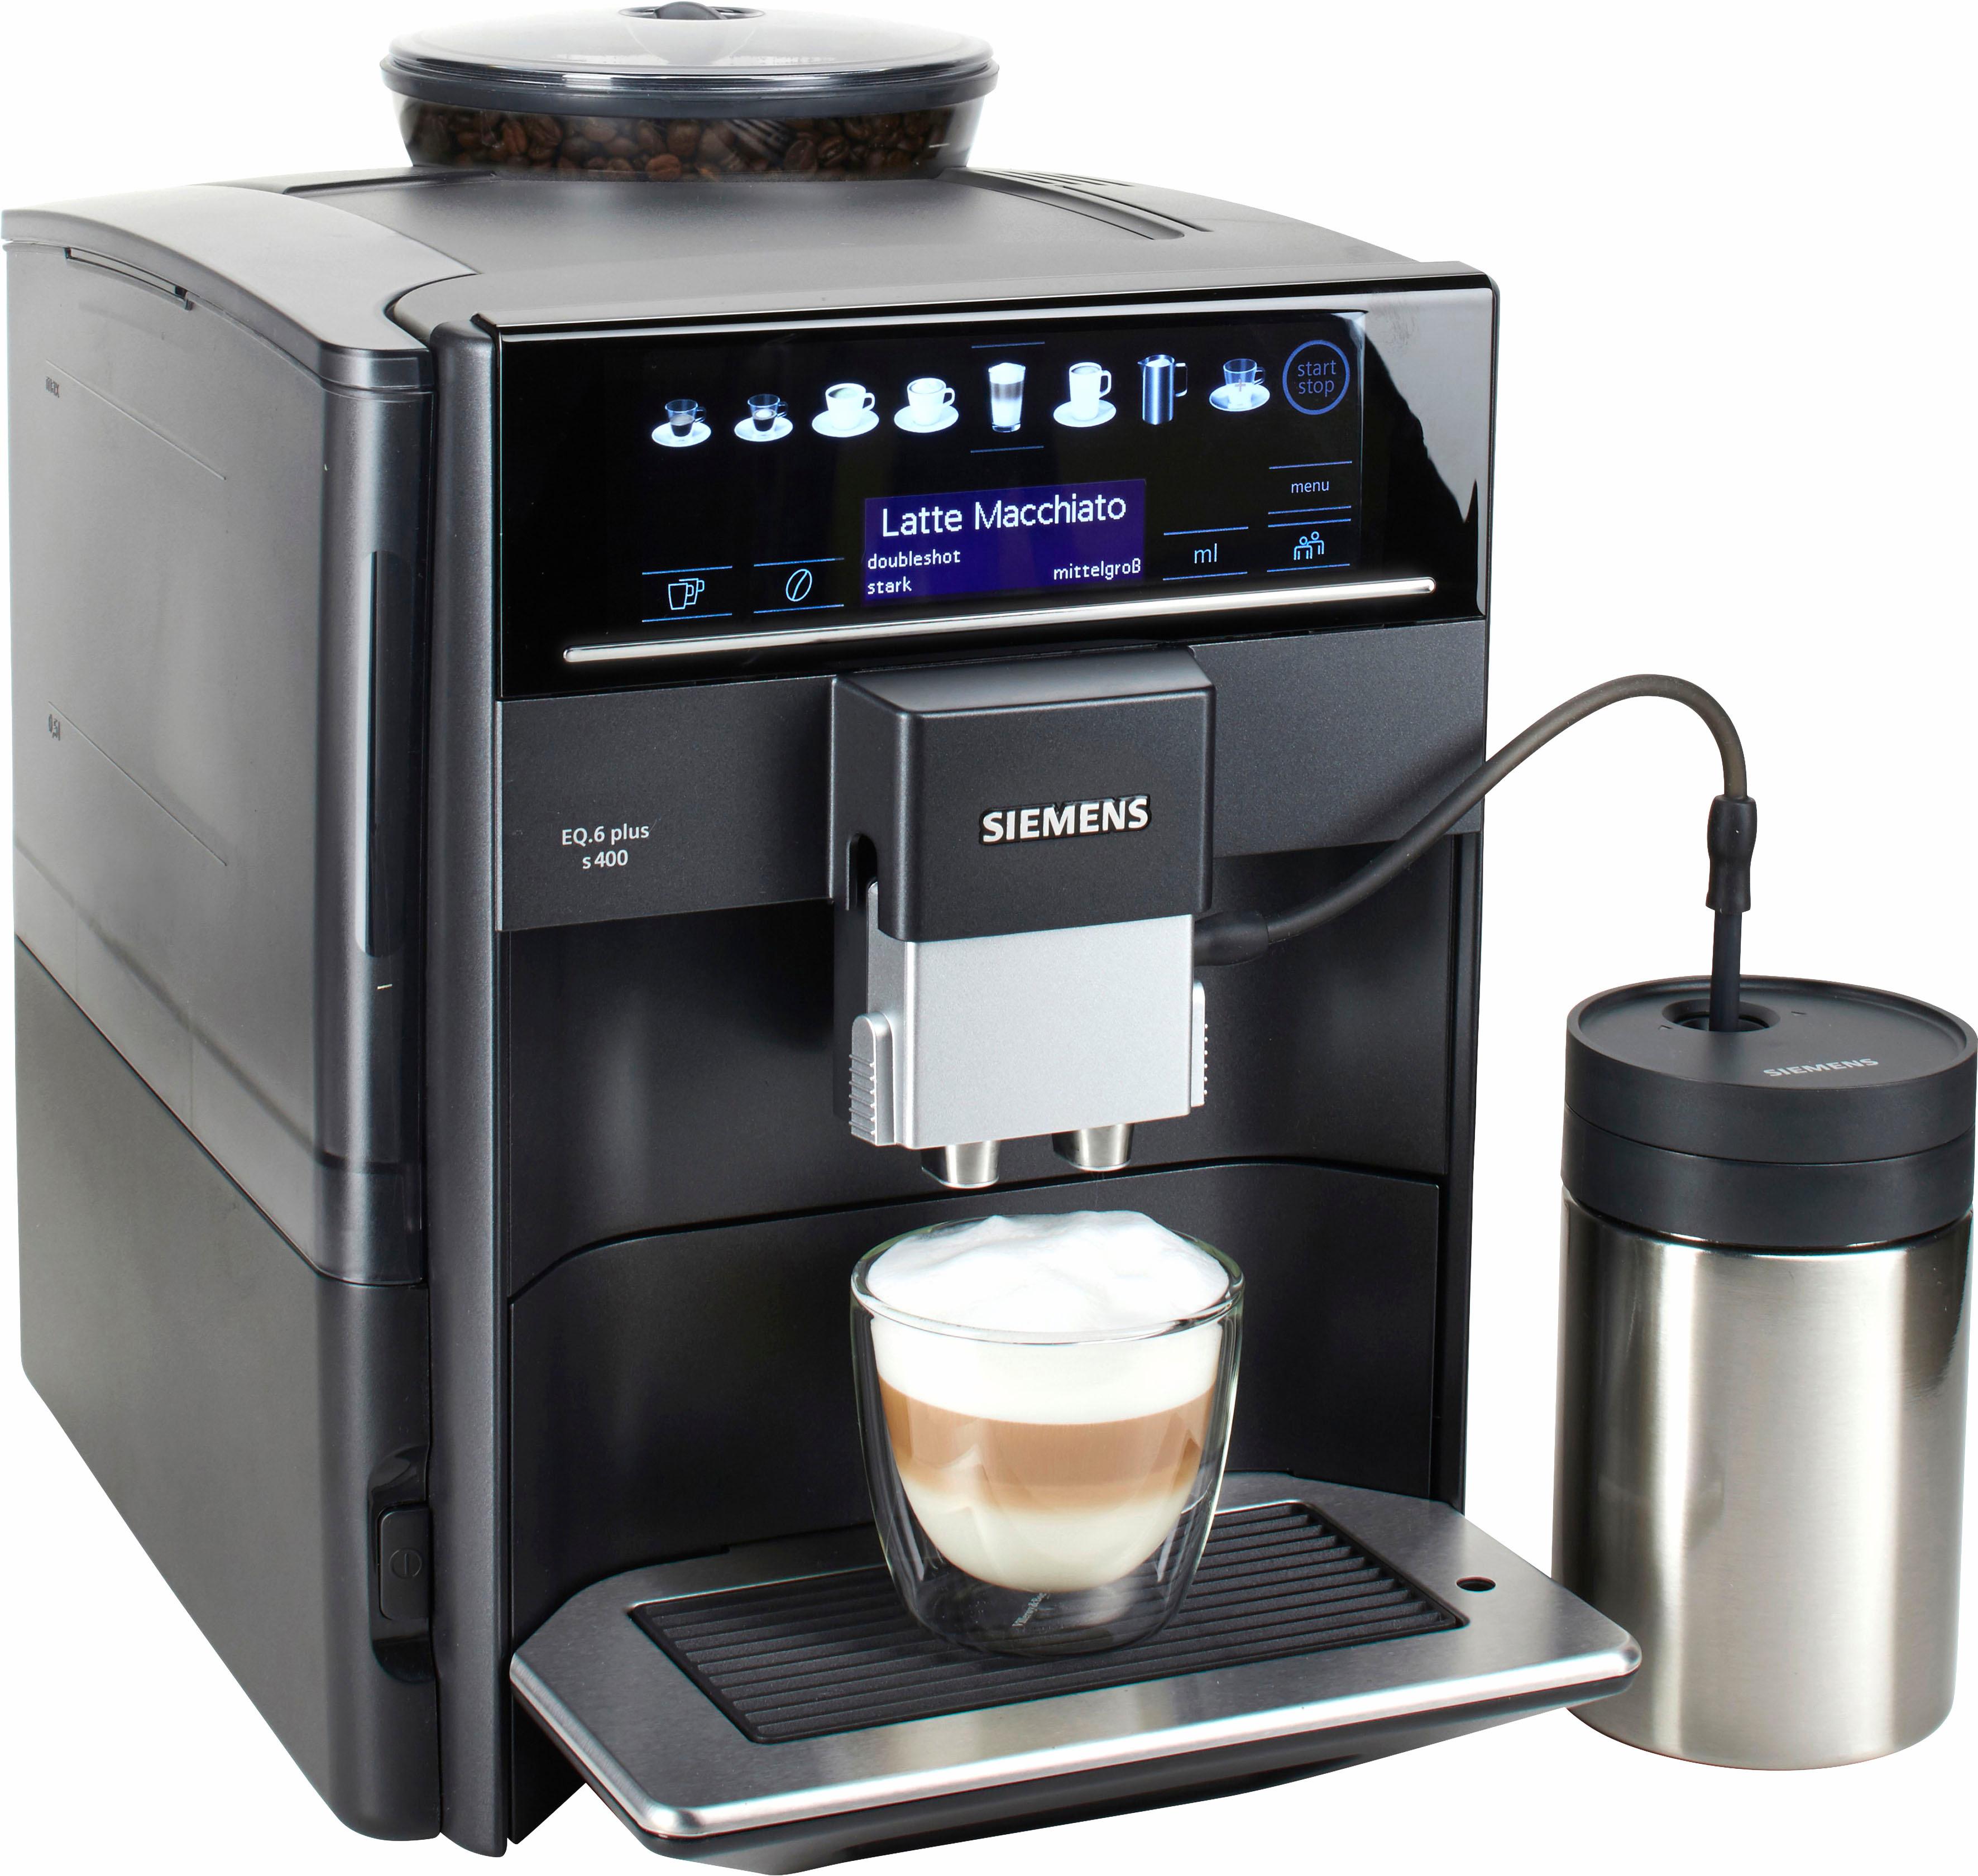 SIEMENS Kaffeevollautomat "EQ.6 plus s400 TE654509DE", inkl. Milchbehälter im Wert von UVP € 49,90